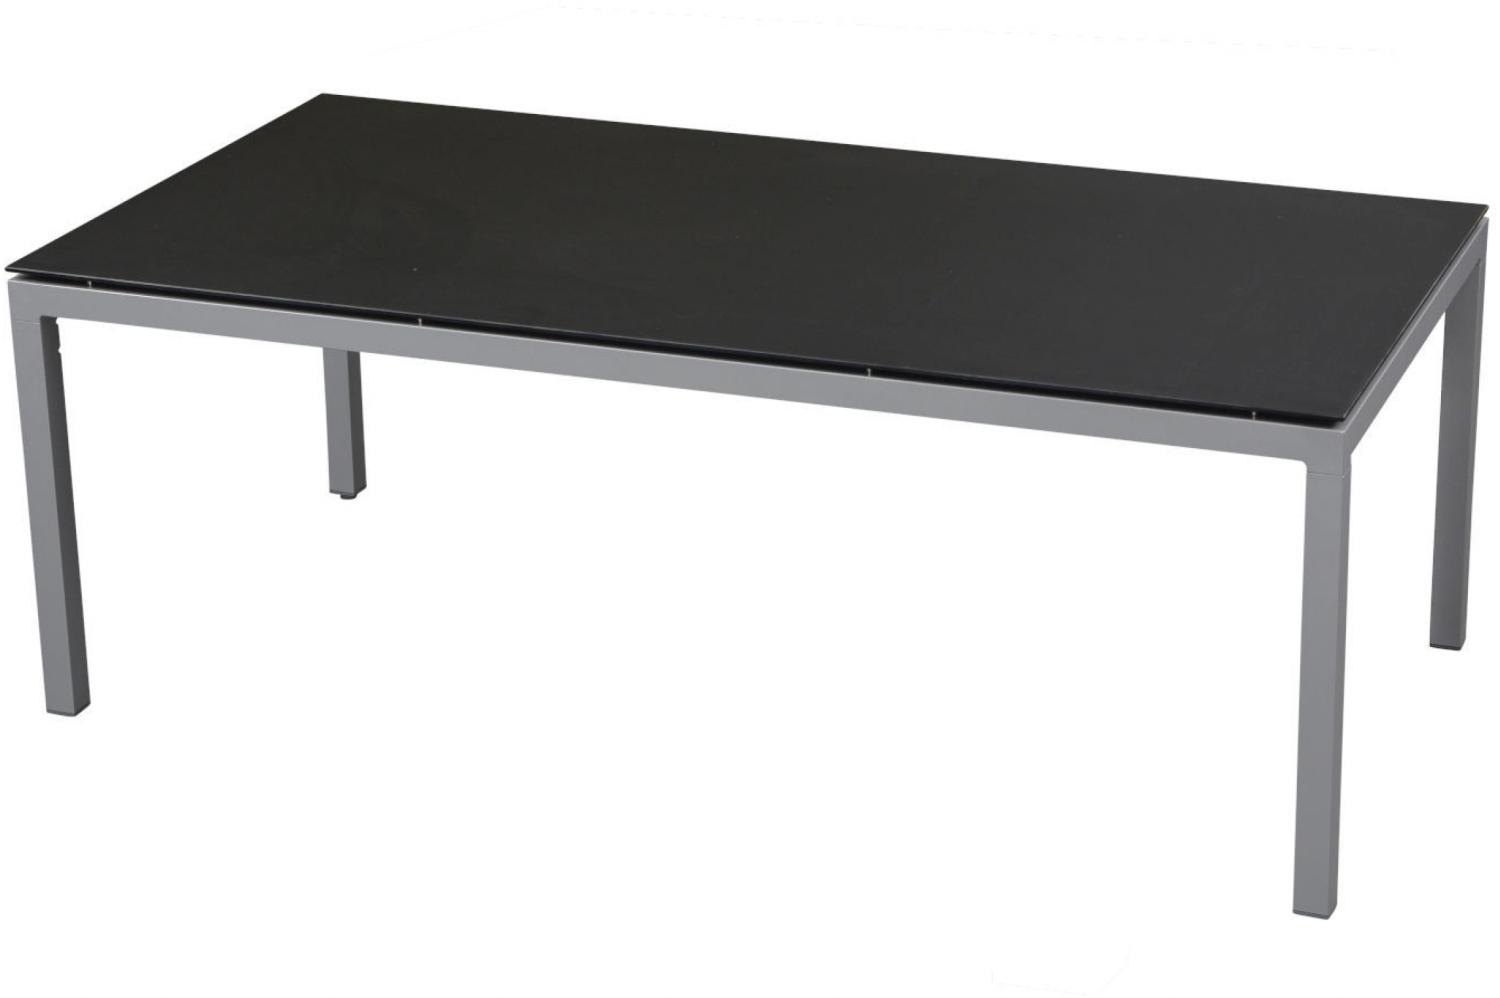 Inko Gartentisch Aluminium graphit 160x90 cm Terrassentisch Tischplatte nach Wahl Deropal anthrazit Bild 1